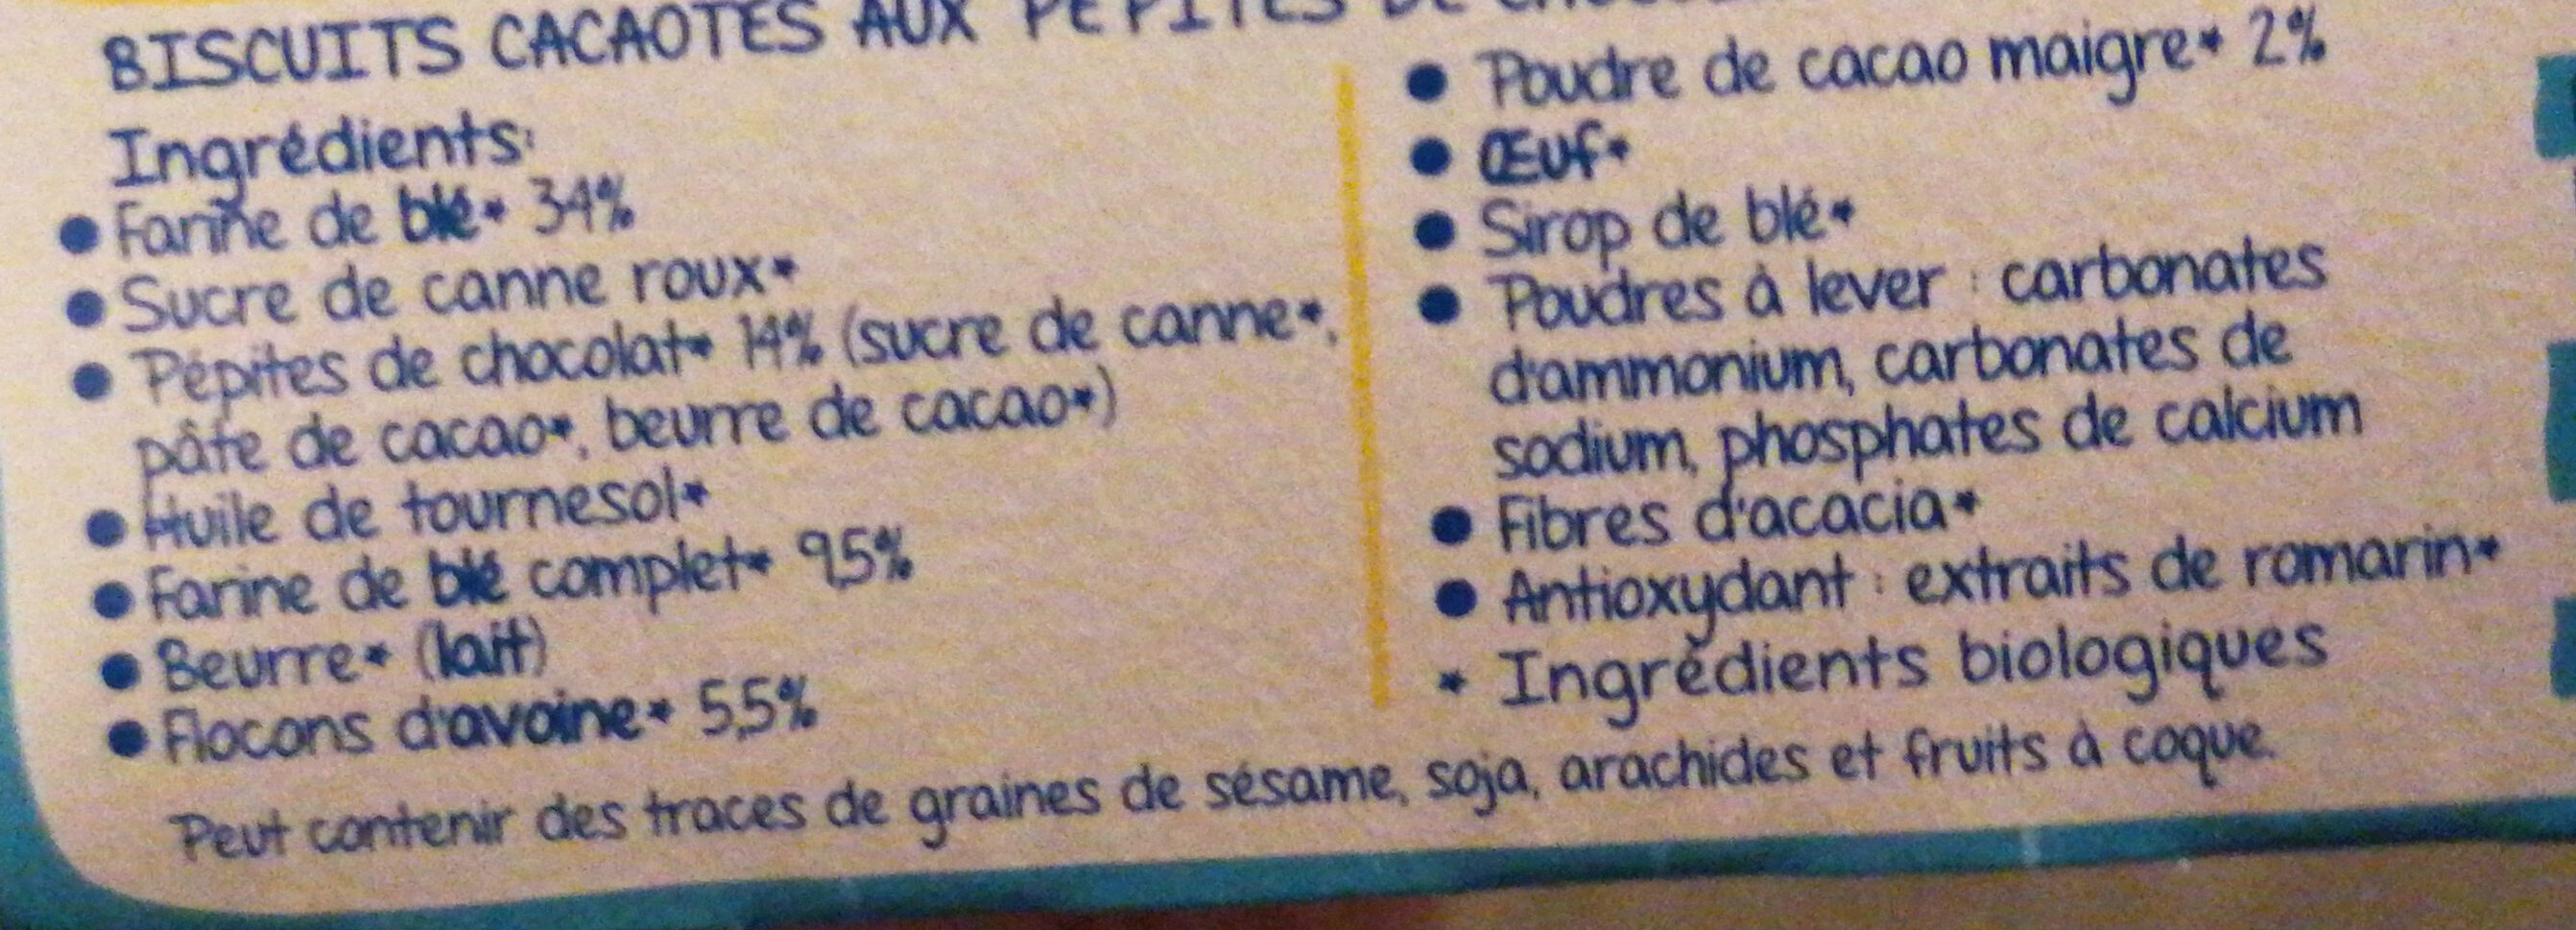 Les P'tits curieux - Ingrediënten - fr